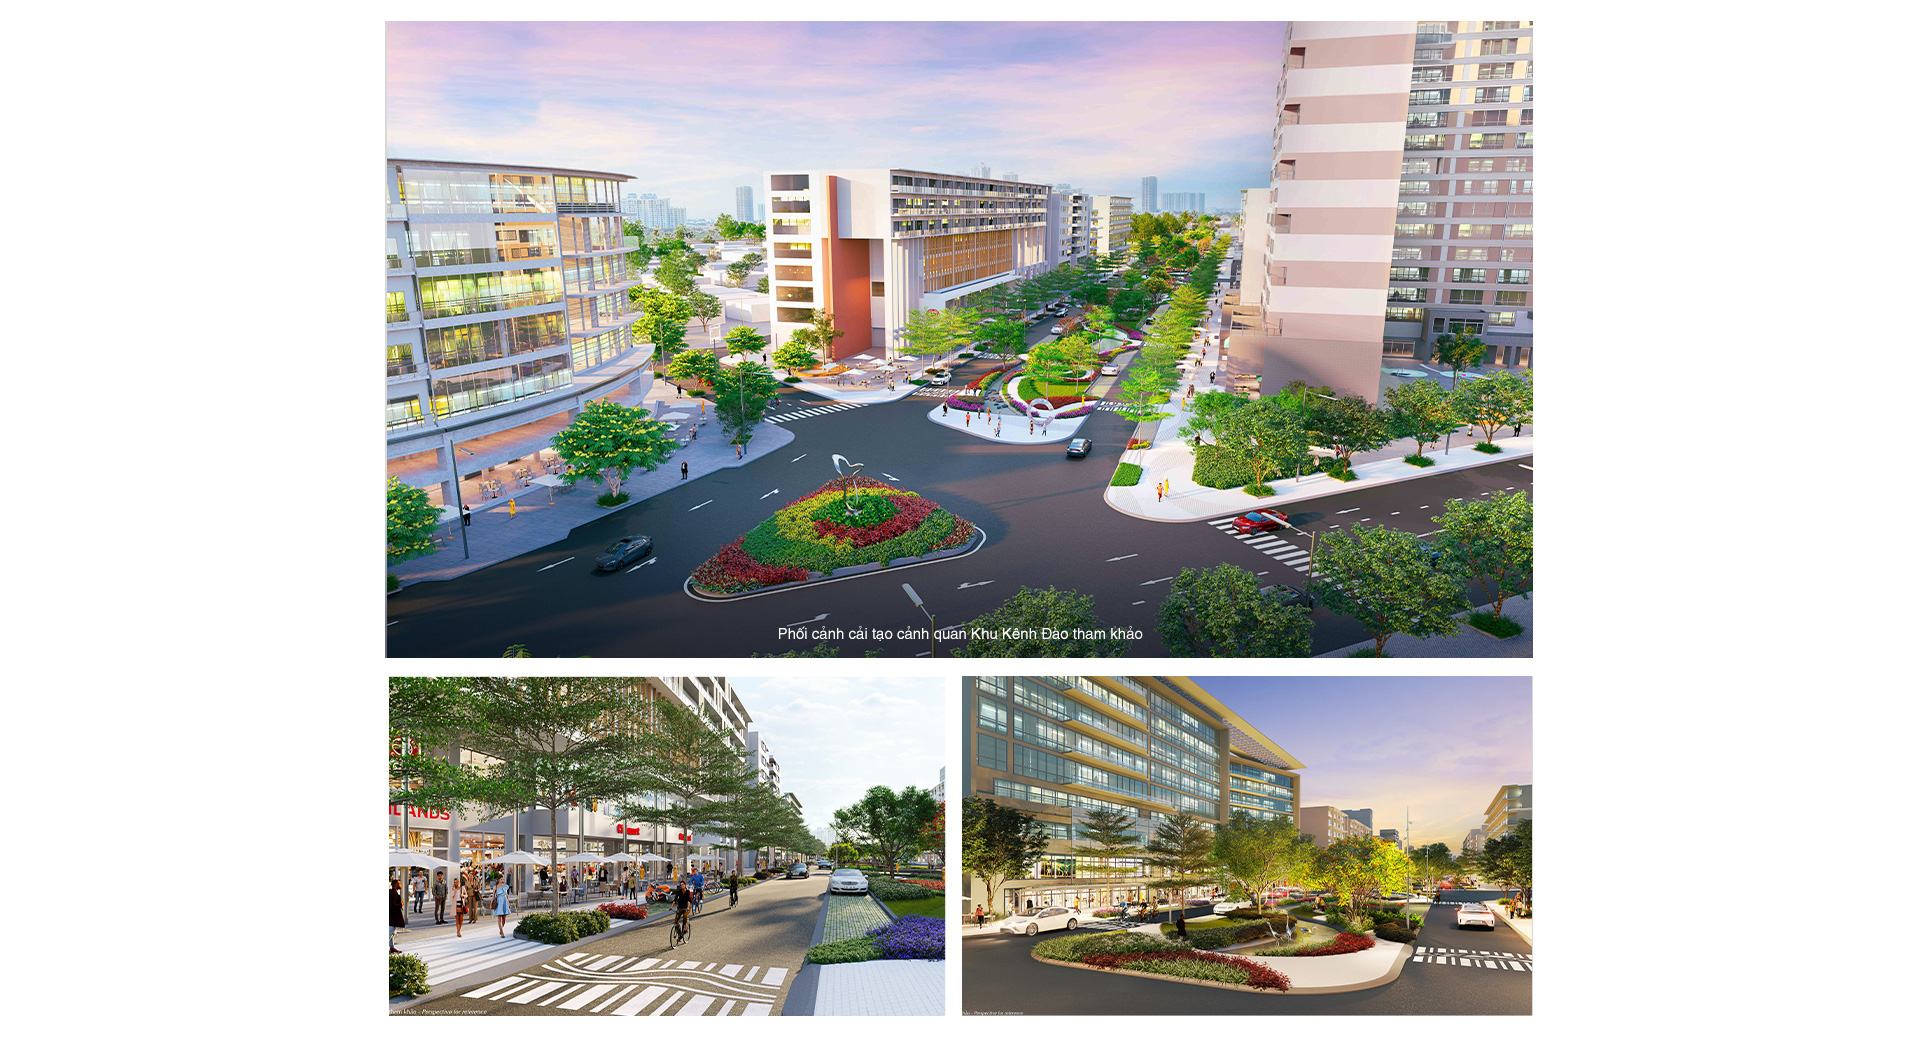 Bất động sản Phú Mỹ Hưng sắp đón sóng tăng trưởng từ loạt cú hích hạ tầng dịch vụ đô thị - Ảnh 4.